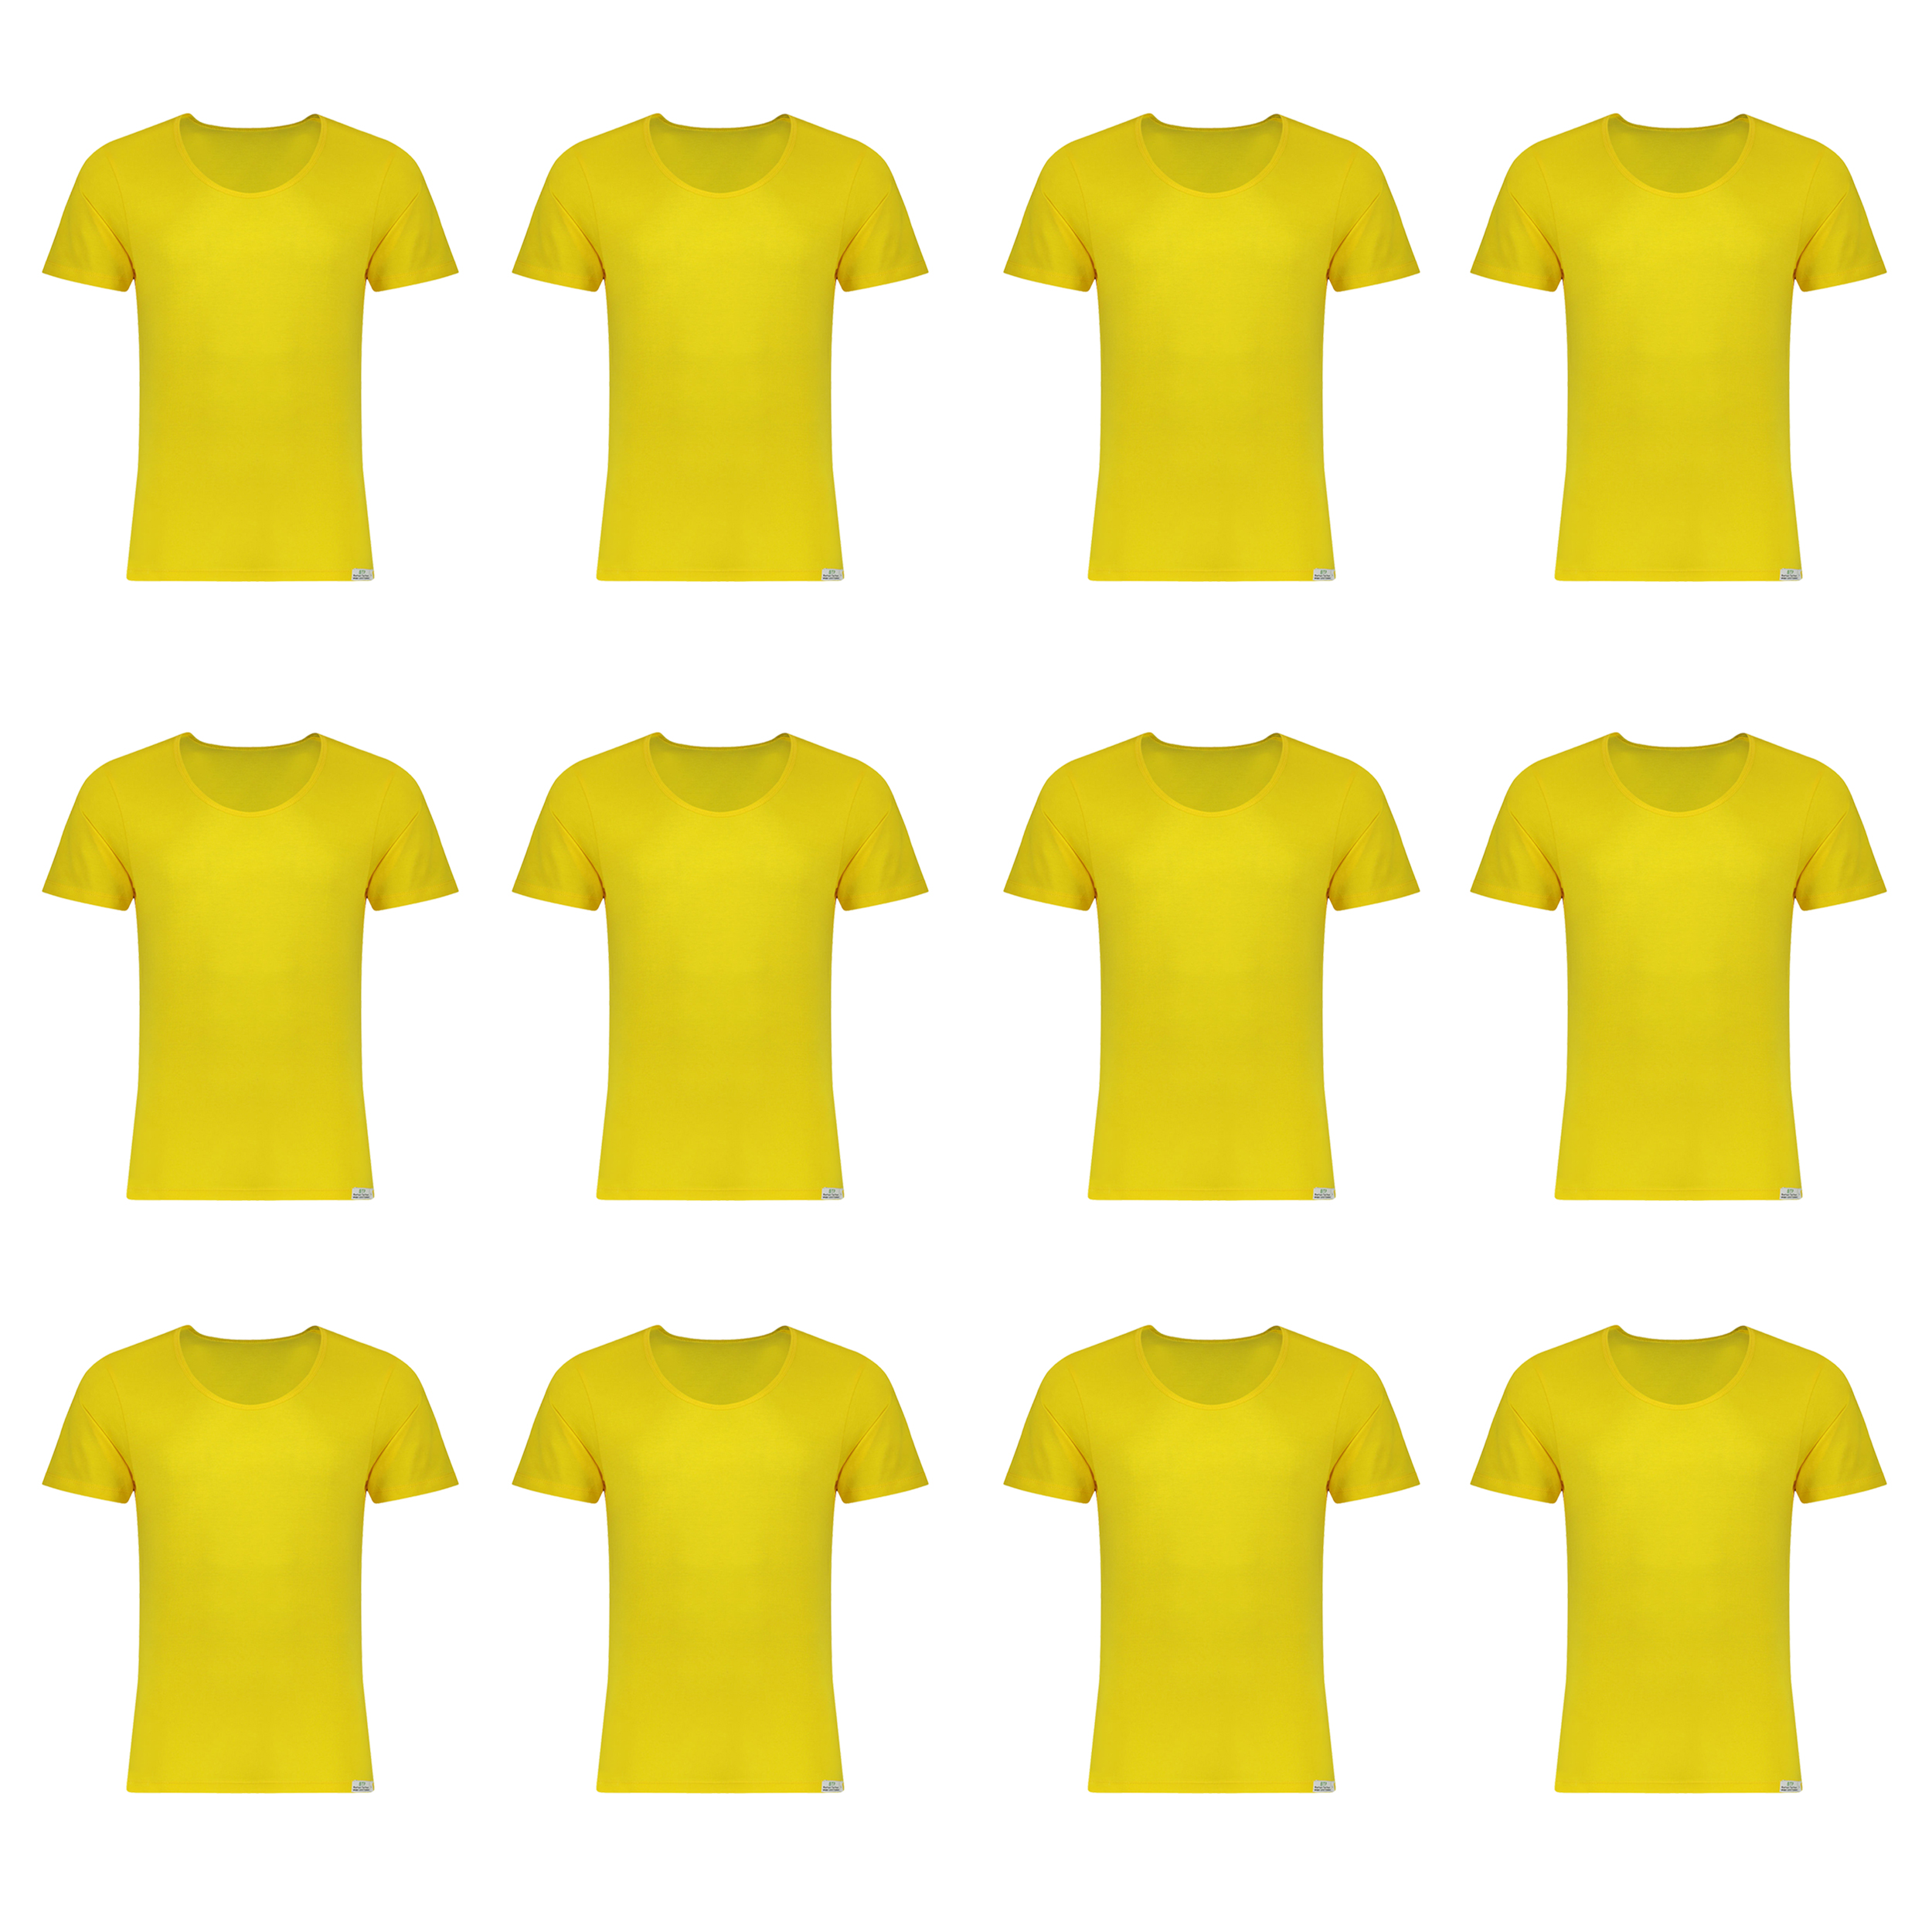 زیرپوش آستین دار مردانه برهان تن پوش مدل 5-02 رنگ زرد بسته 12 عددی